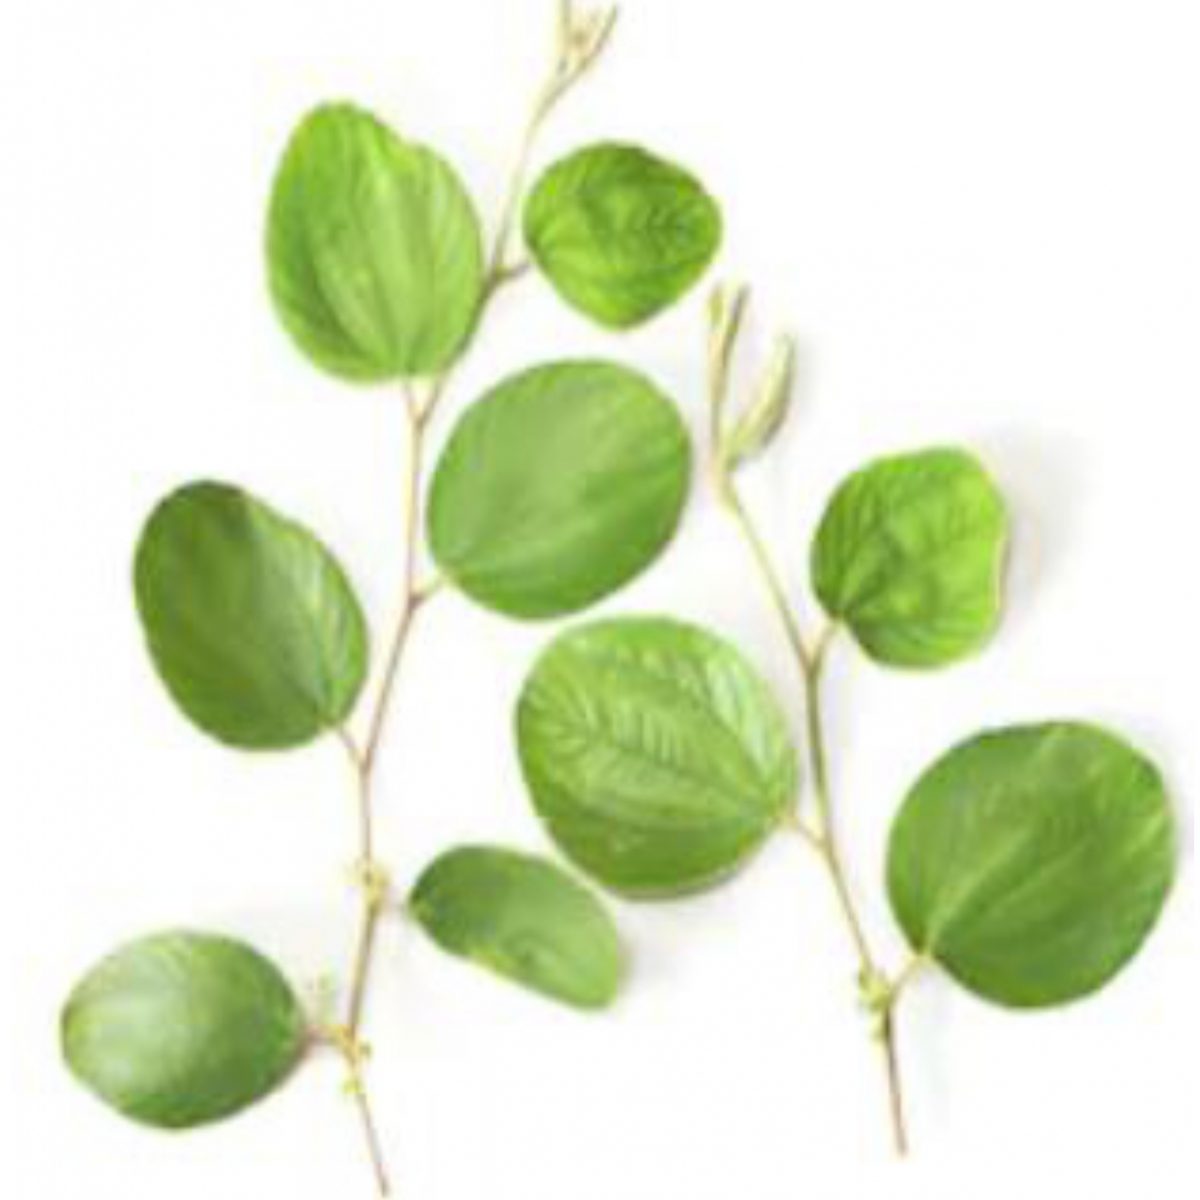 Manfaat rebusan daun bidara bagi tubuh